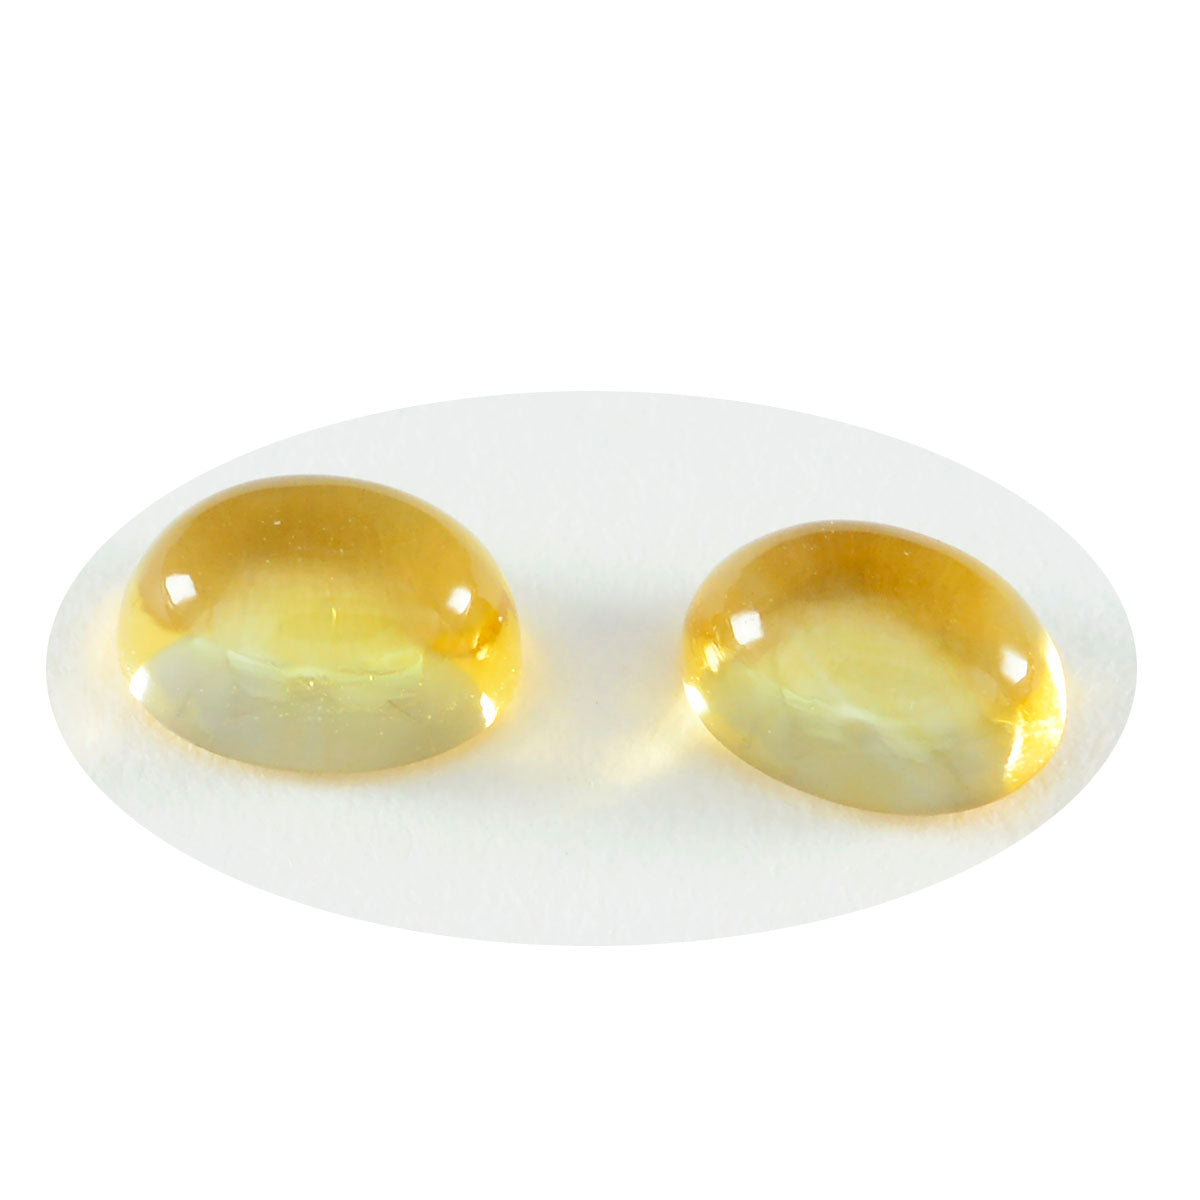 Riyogems 1 Stück gelber Citrin-Cabochon, 10 x 14 mm, ovale Form, erstaunliche Qualität, lose Edelsteine